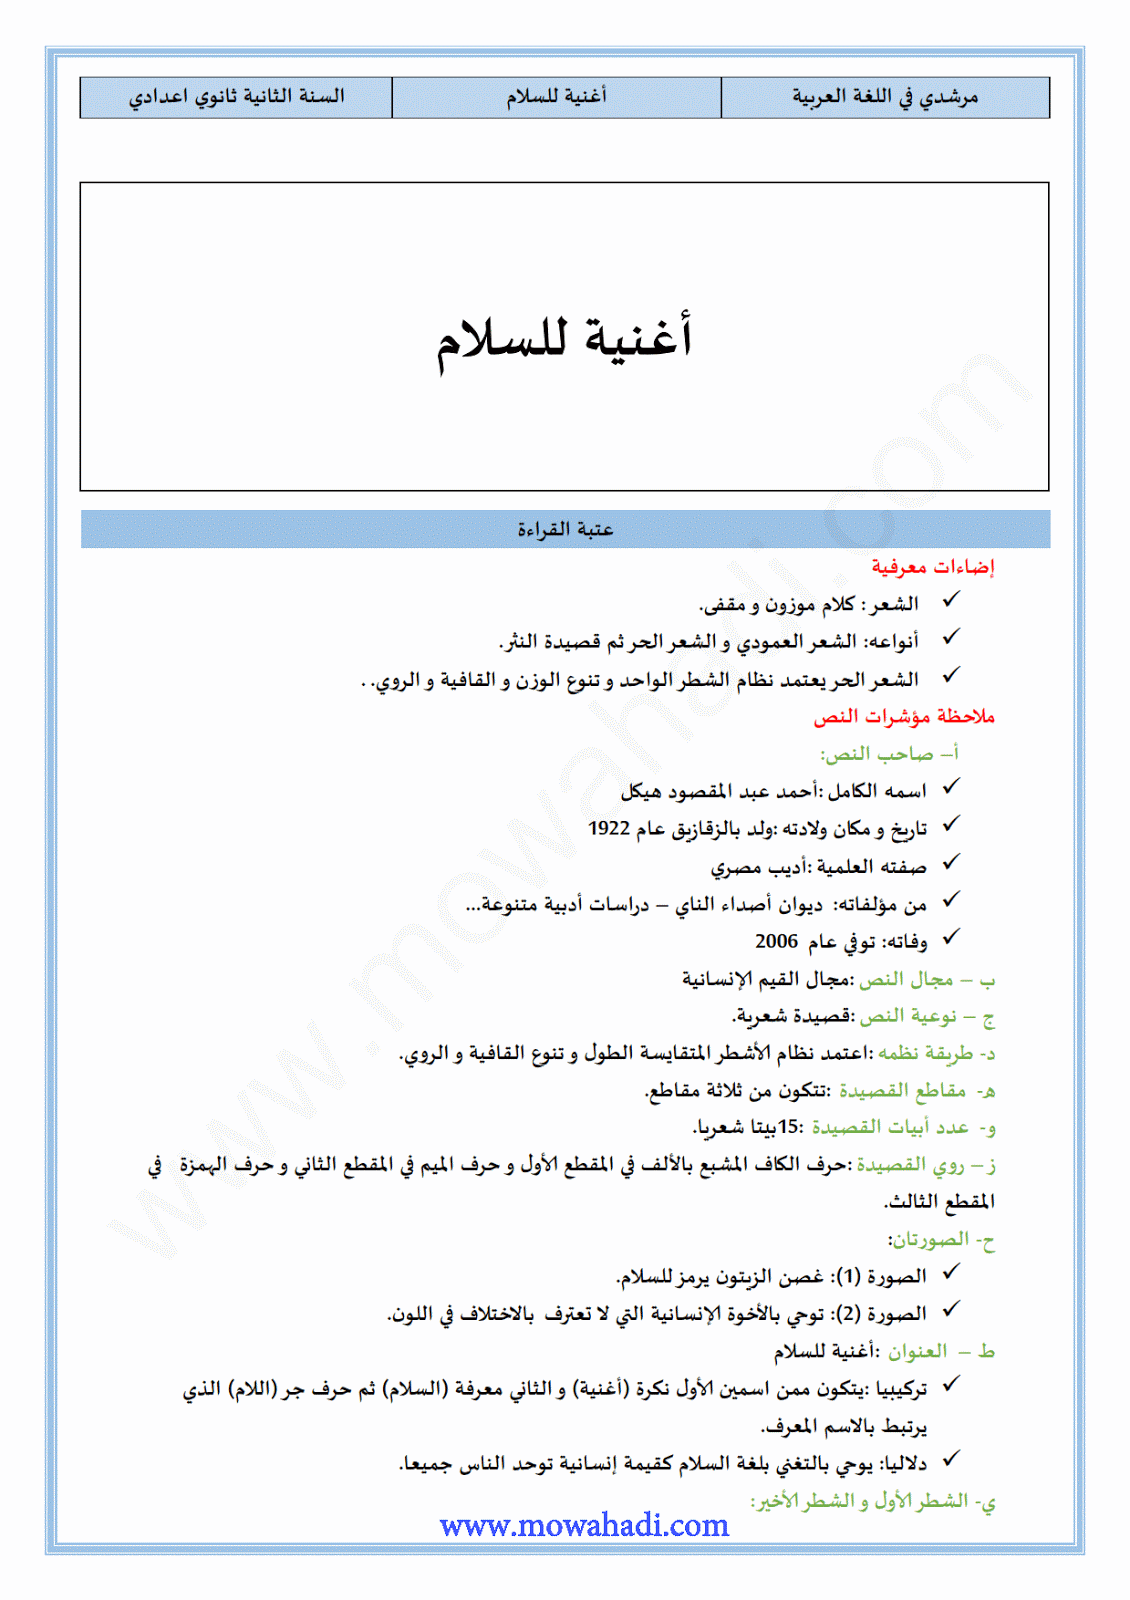 تحضير النص القرائي أغنية للسلام للسنة الثانية اعدادي في مادة اللغة العربية